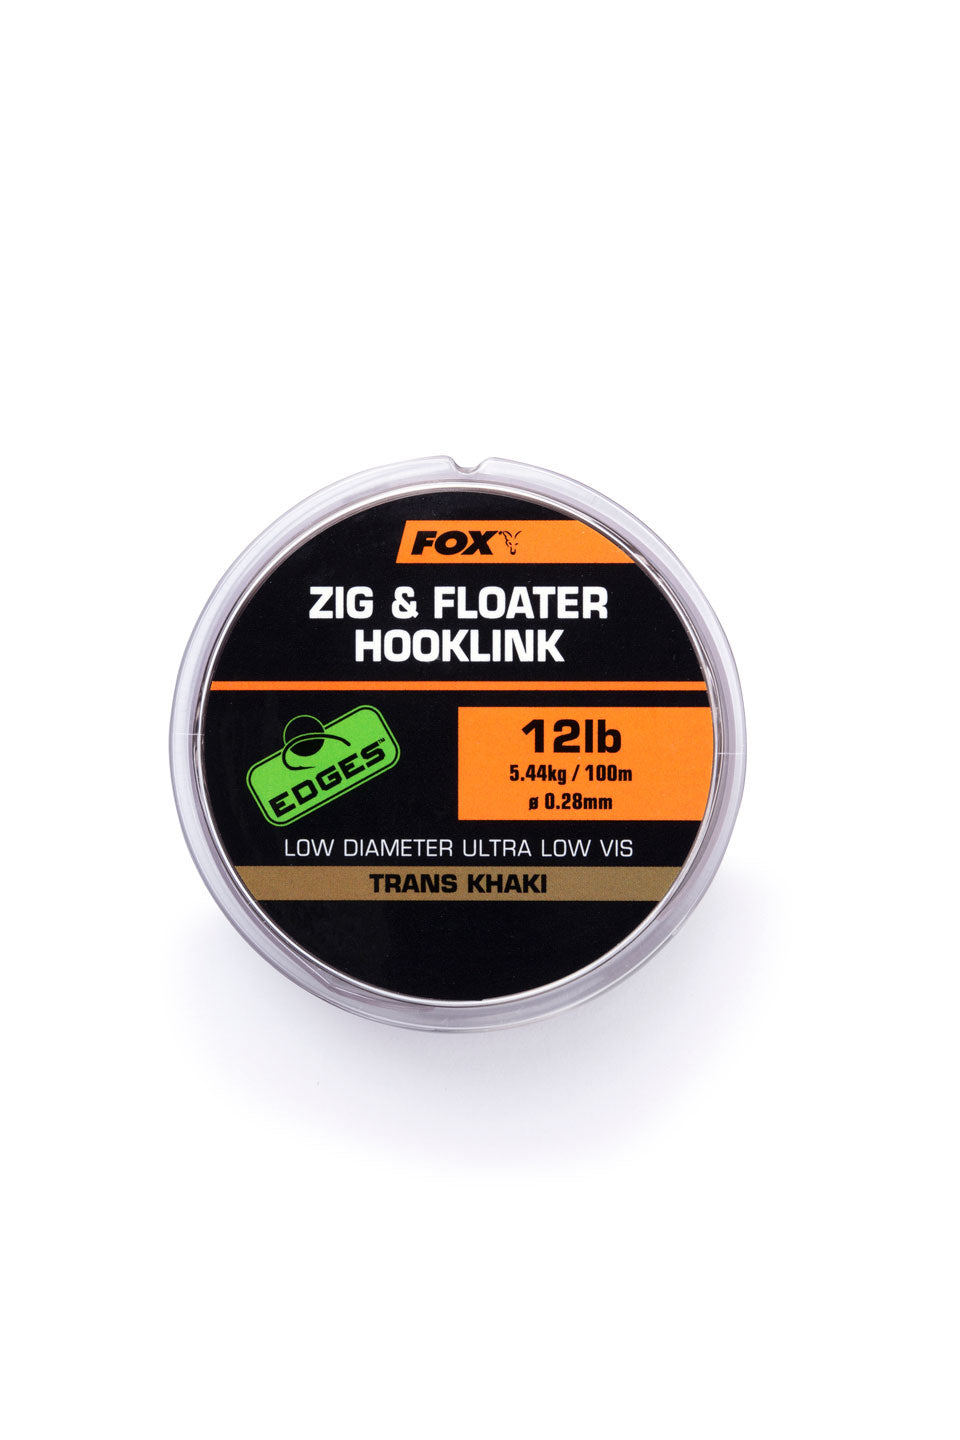 Fox Edges Zig & Floater Hooklink Various Breaking Strains